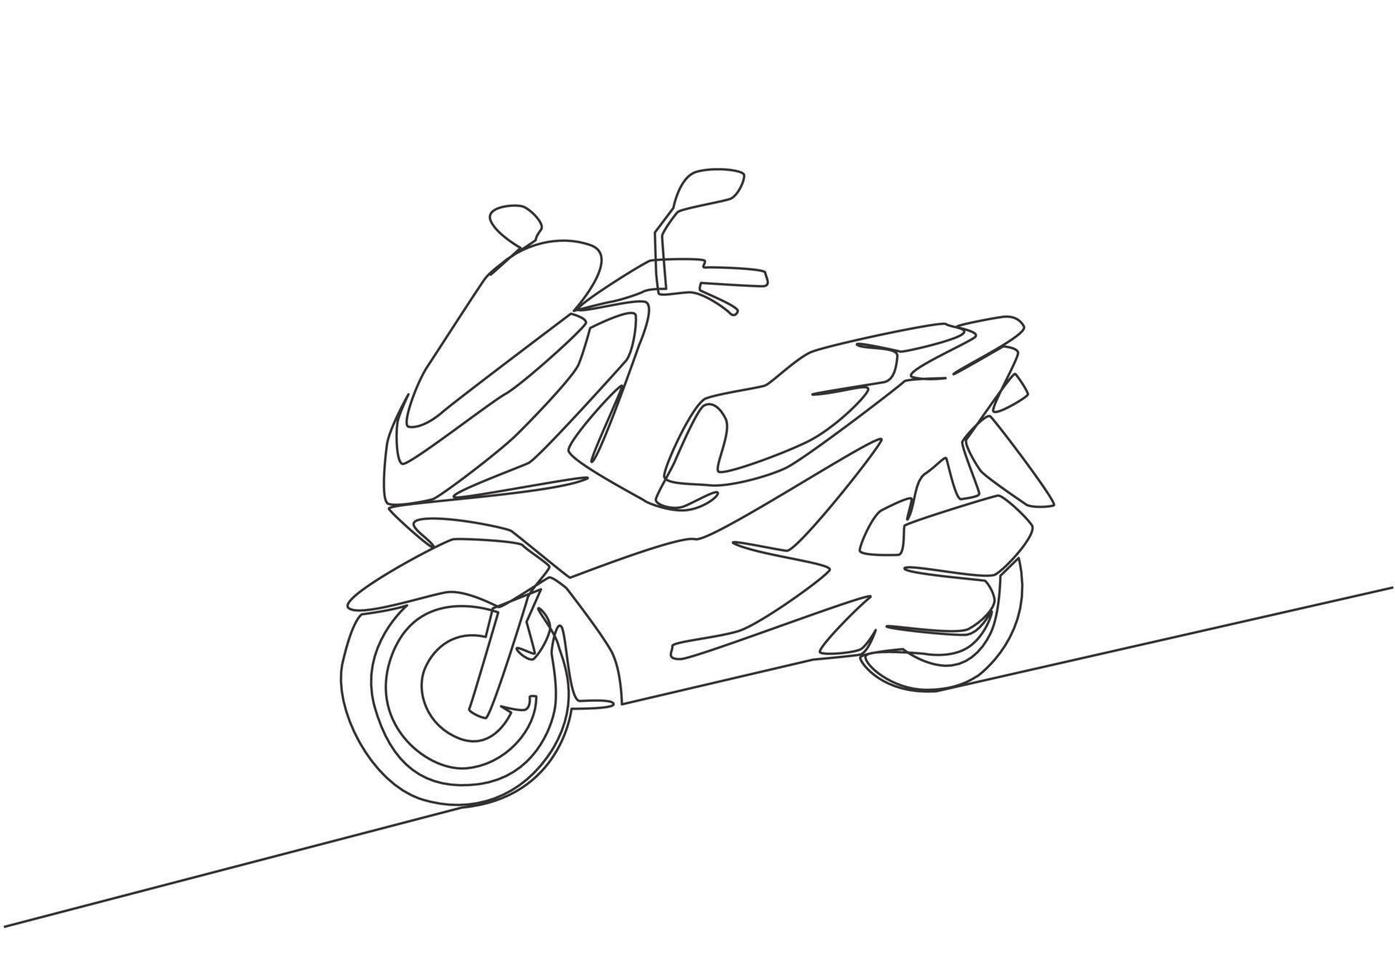 Célibataire continu ligne dessin de branché luxe asiatique dessous moto logo. automatique scooter moto concept. un ligne dessiner conception vecteur illustration